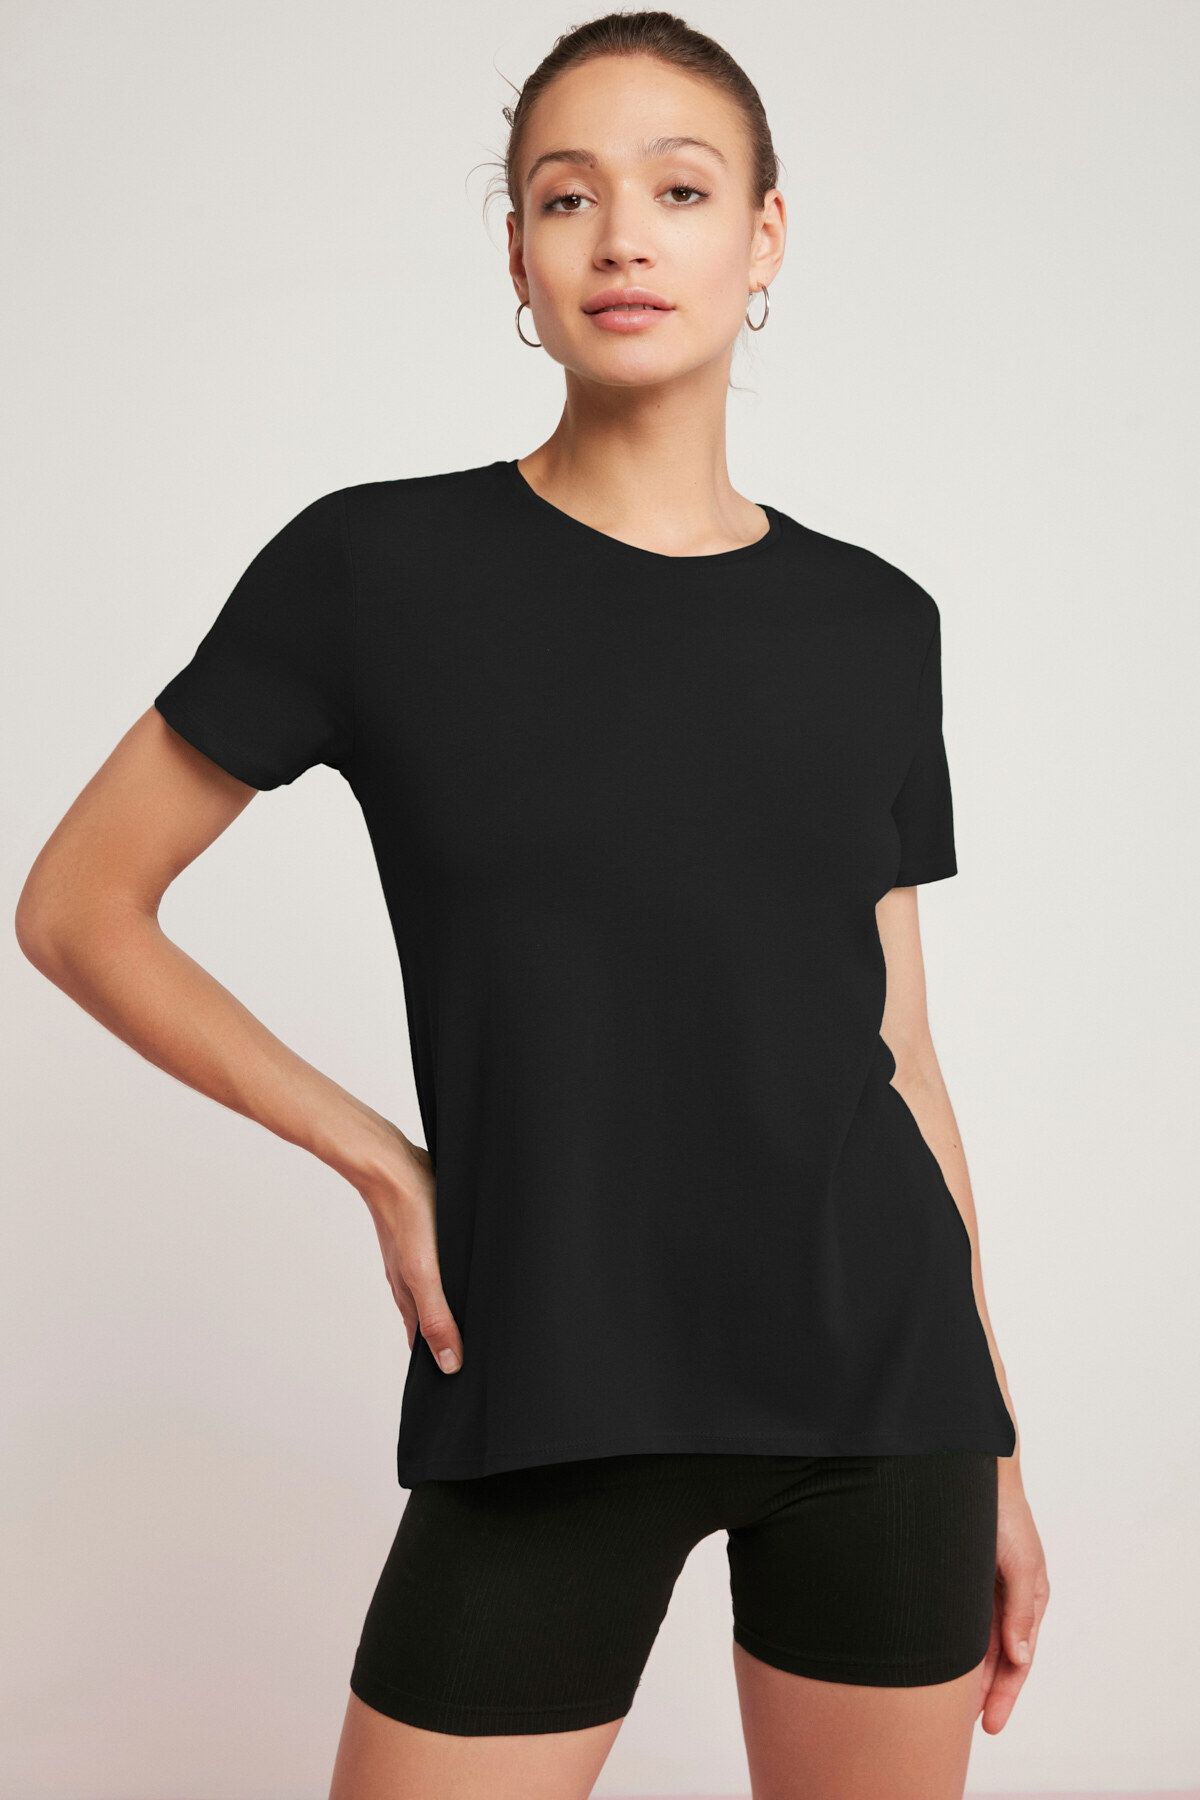 ETHIQUET Tatum Kadın 100% Pamuk Süprem Yuvarlak Yaka Comfort Fit Siyah T-shirt